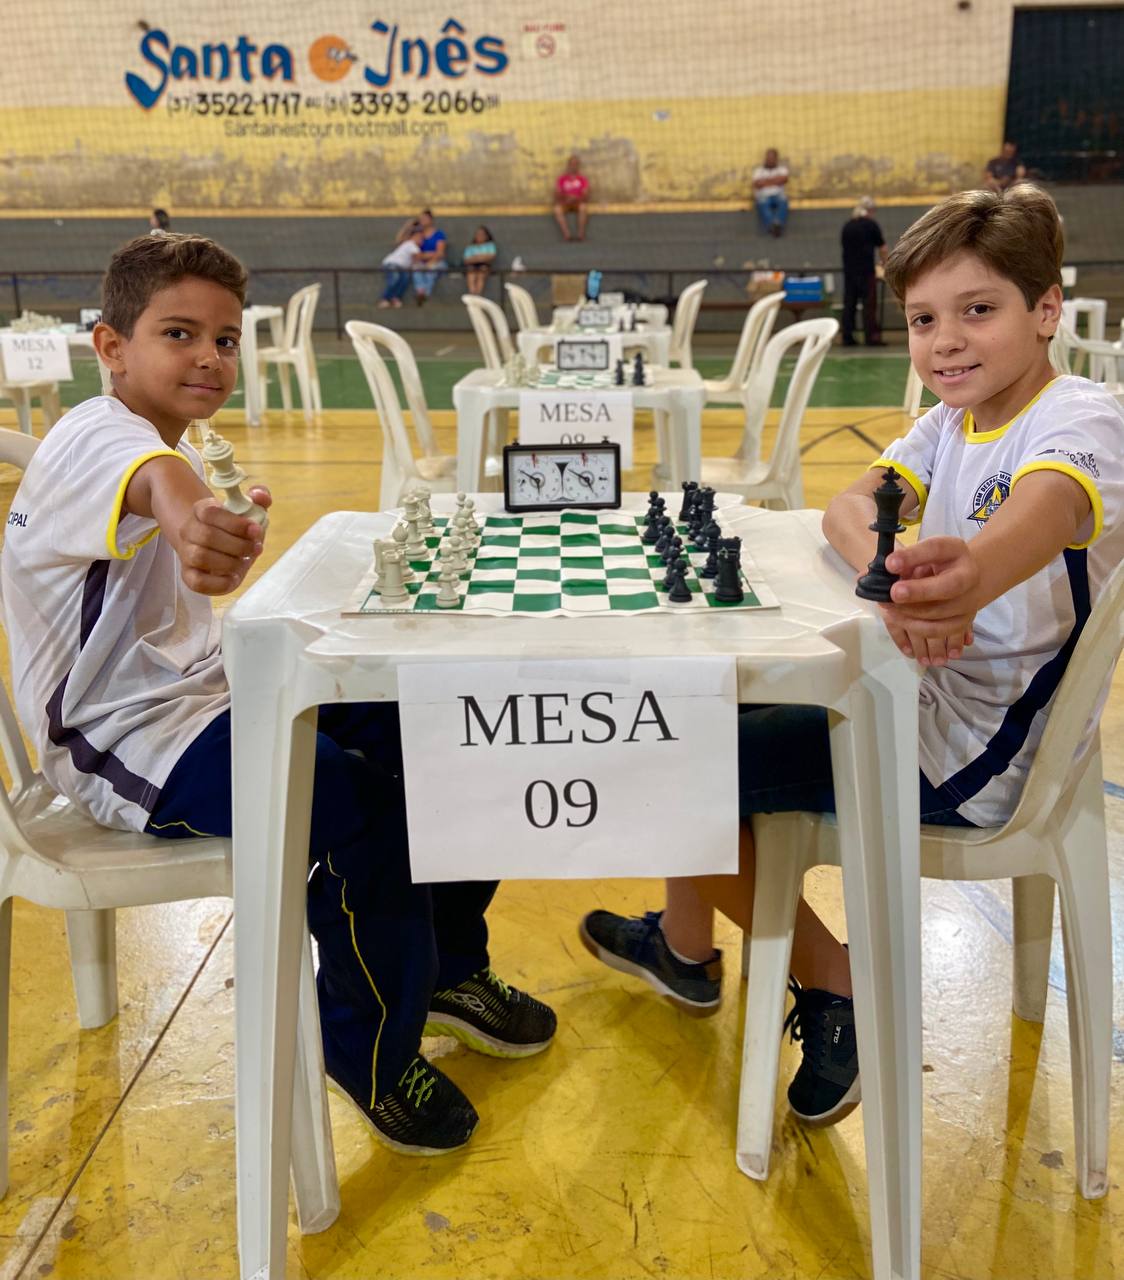 Flavio - Santa Cruz do Sul,Rio Grande do Sul: Jogue Xadrez em 10